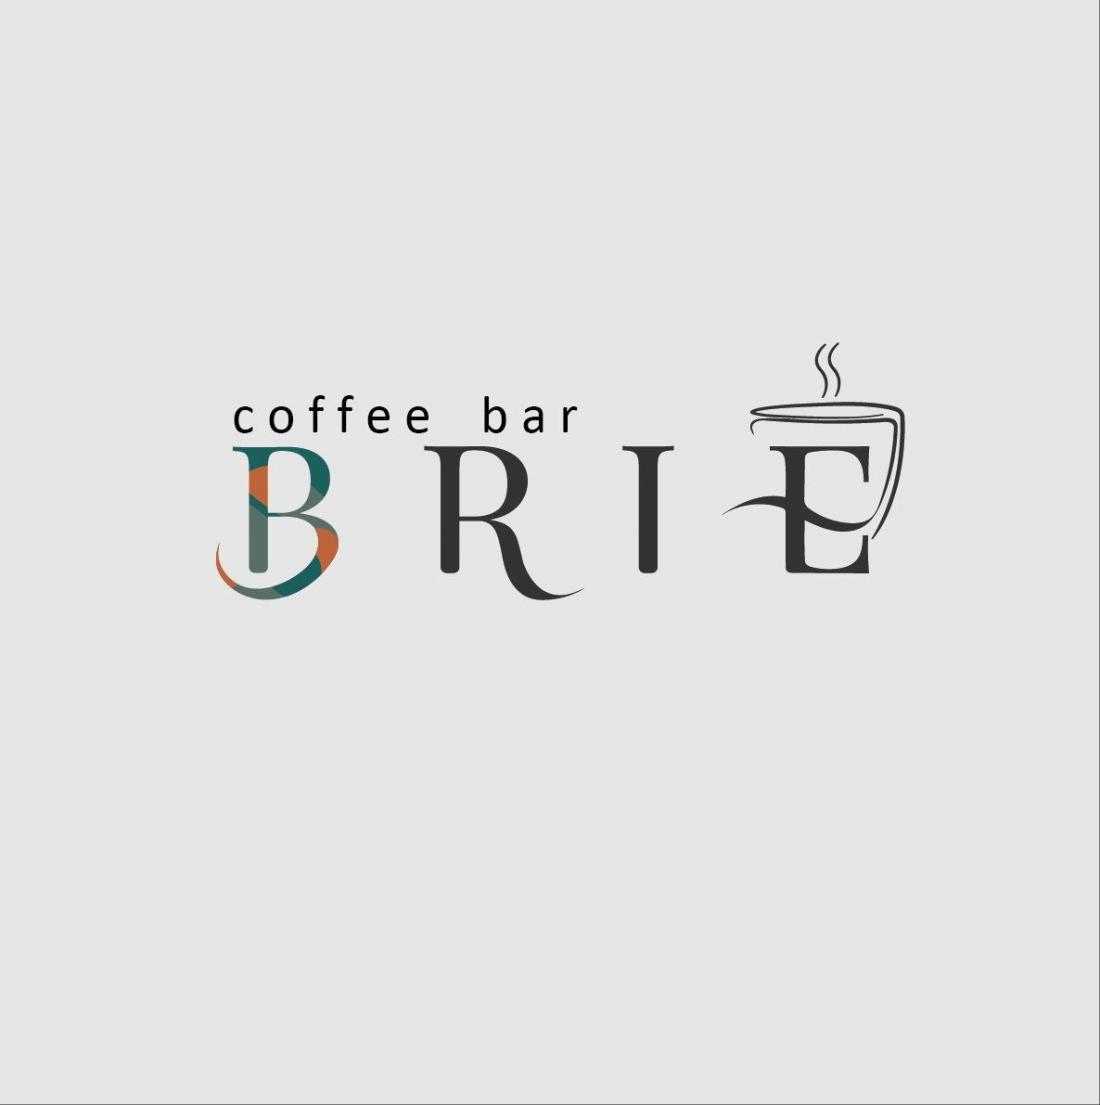 Сеты с капкейком, глазированными сырками, напитками от 3,75 руб. в кофейне "Brie" в Бресте